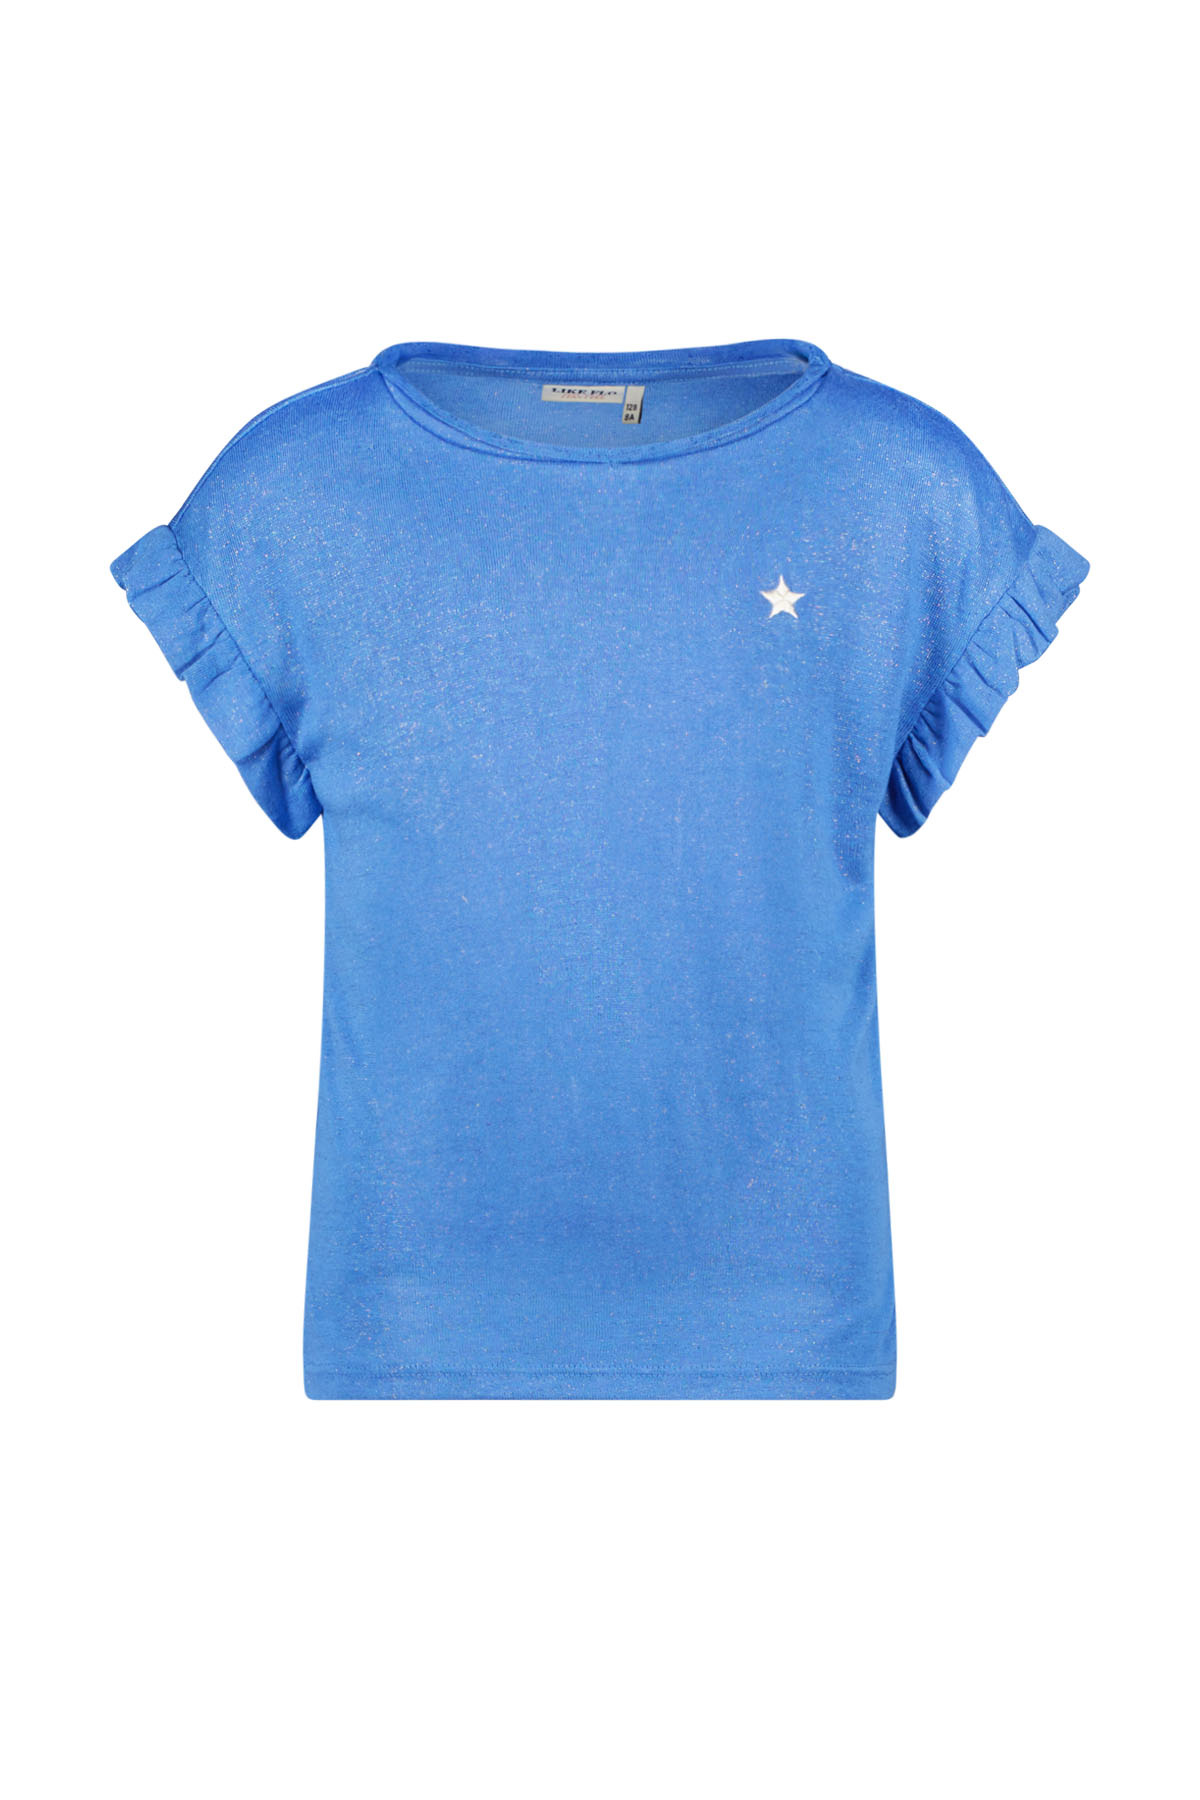 Like Flo F402-5430 Meisjes T-shirt - Blue - Maat 116